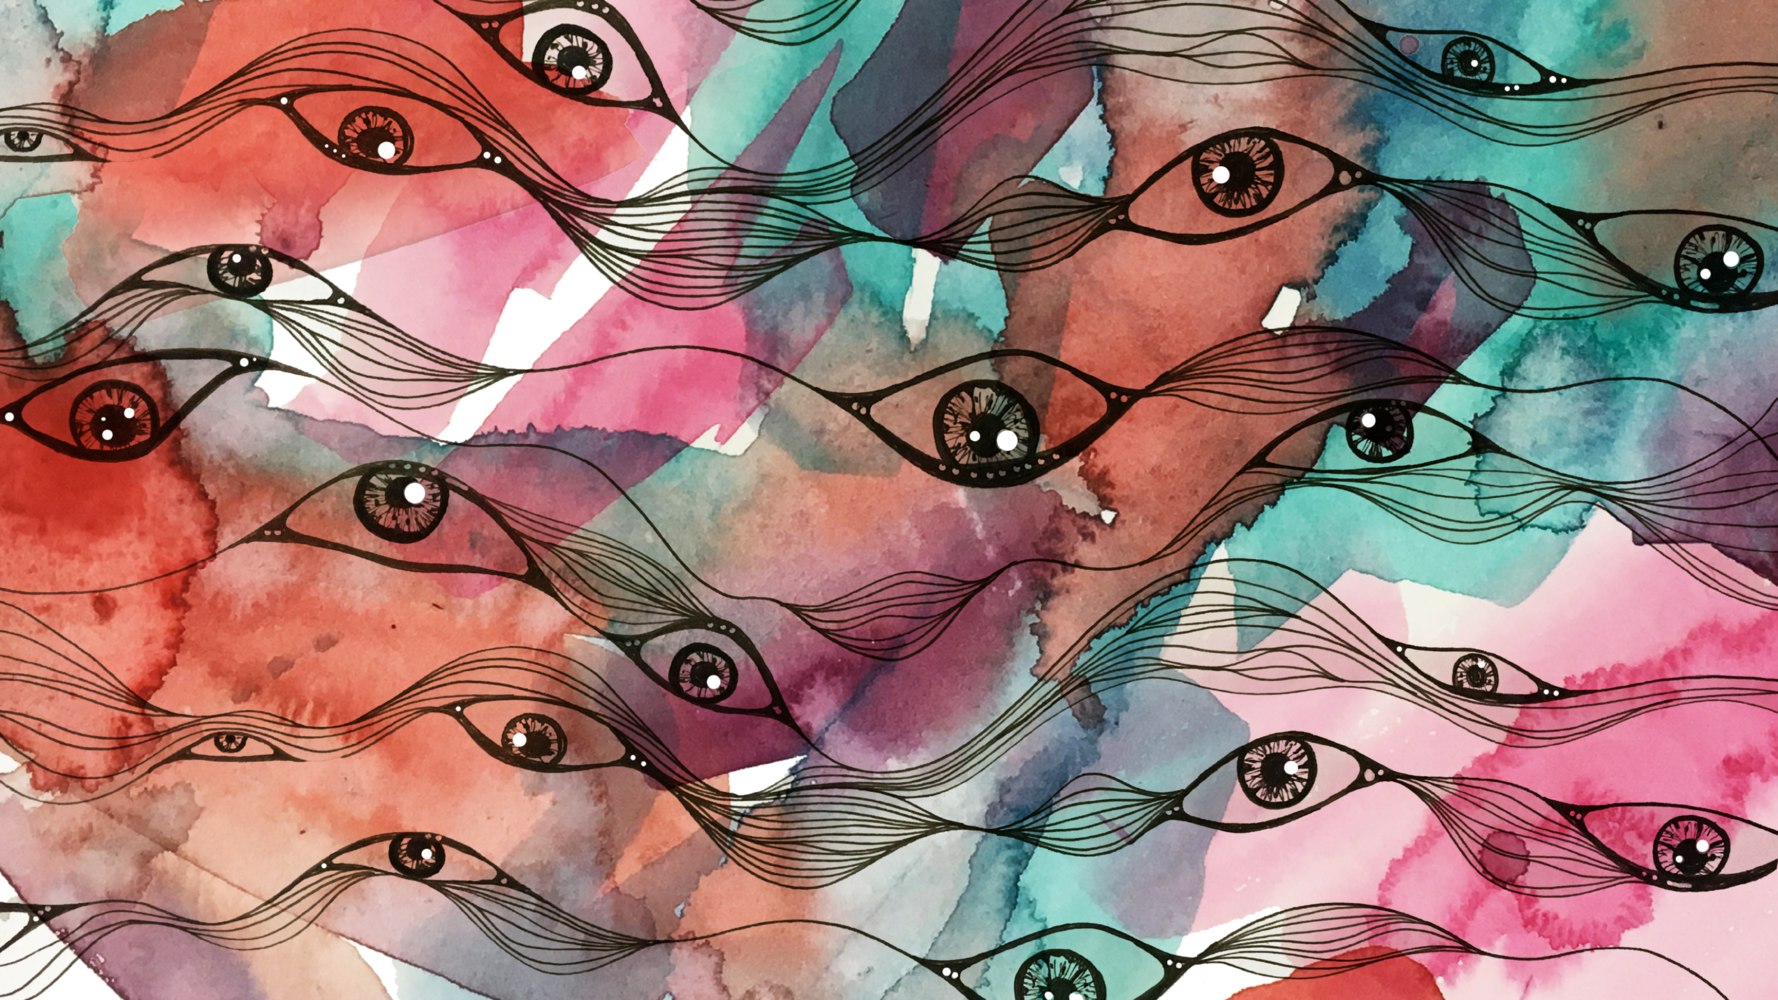 Series of all-seeing eyes